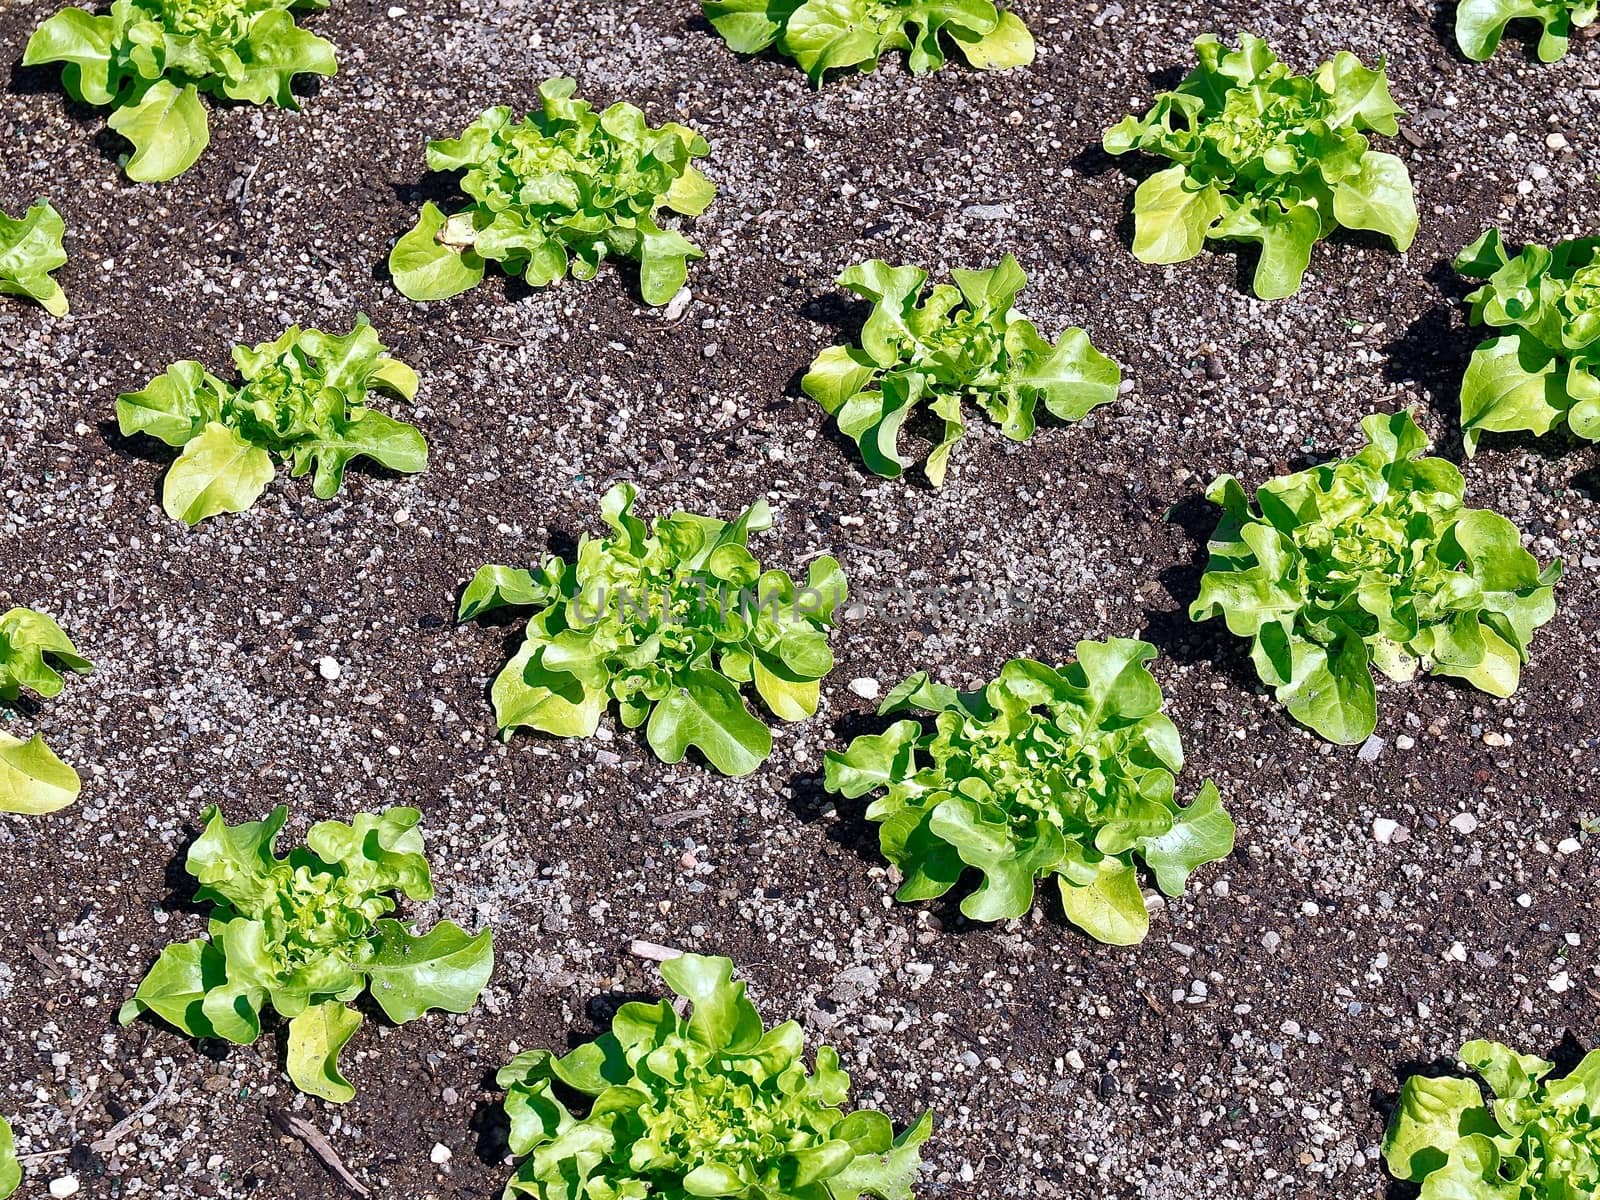 Young green salad plants in a garden by Stimmungsbilder